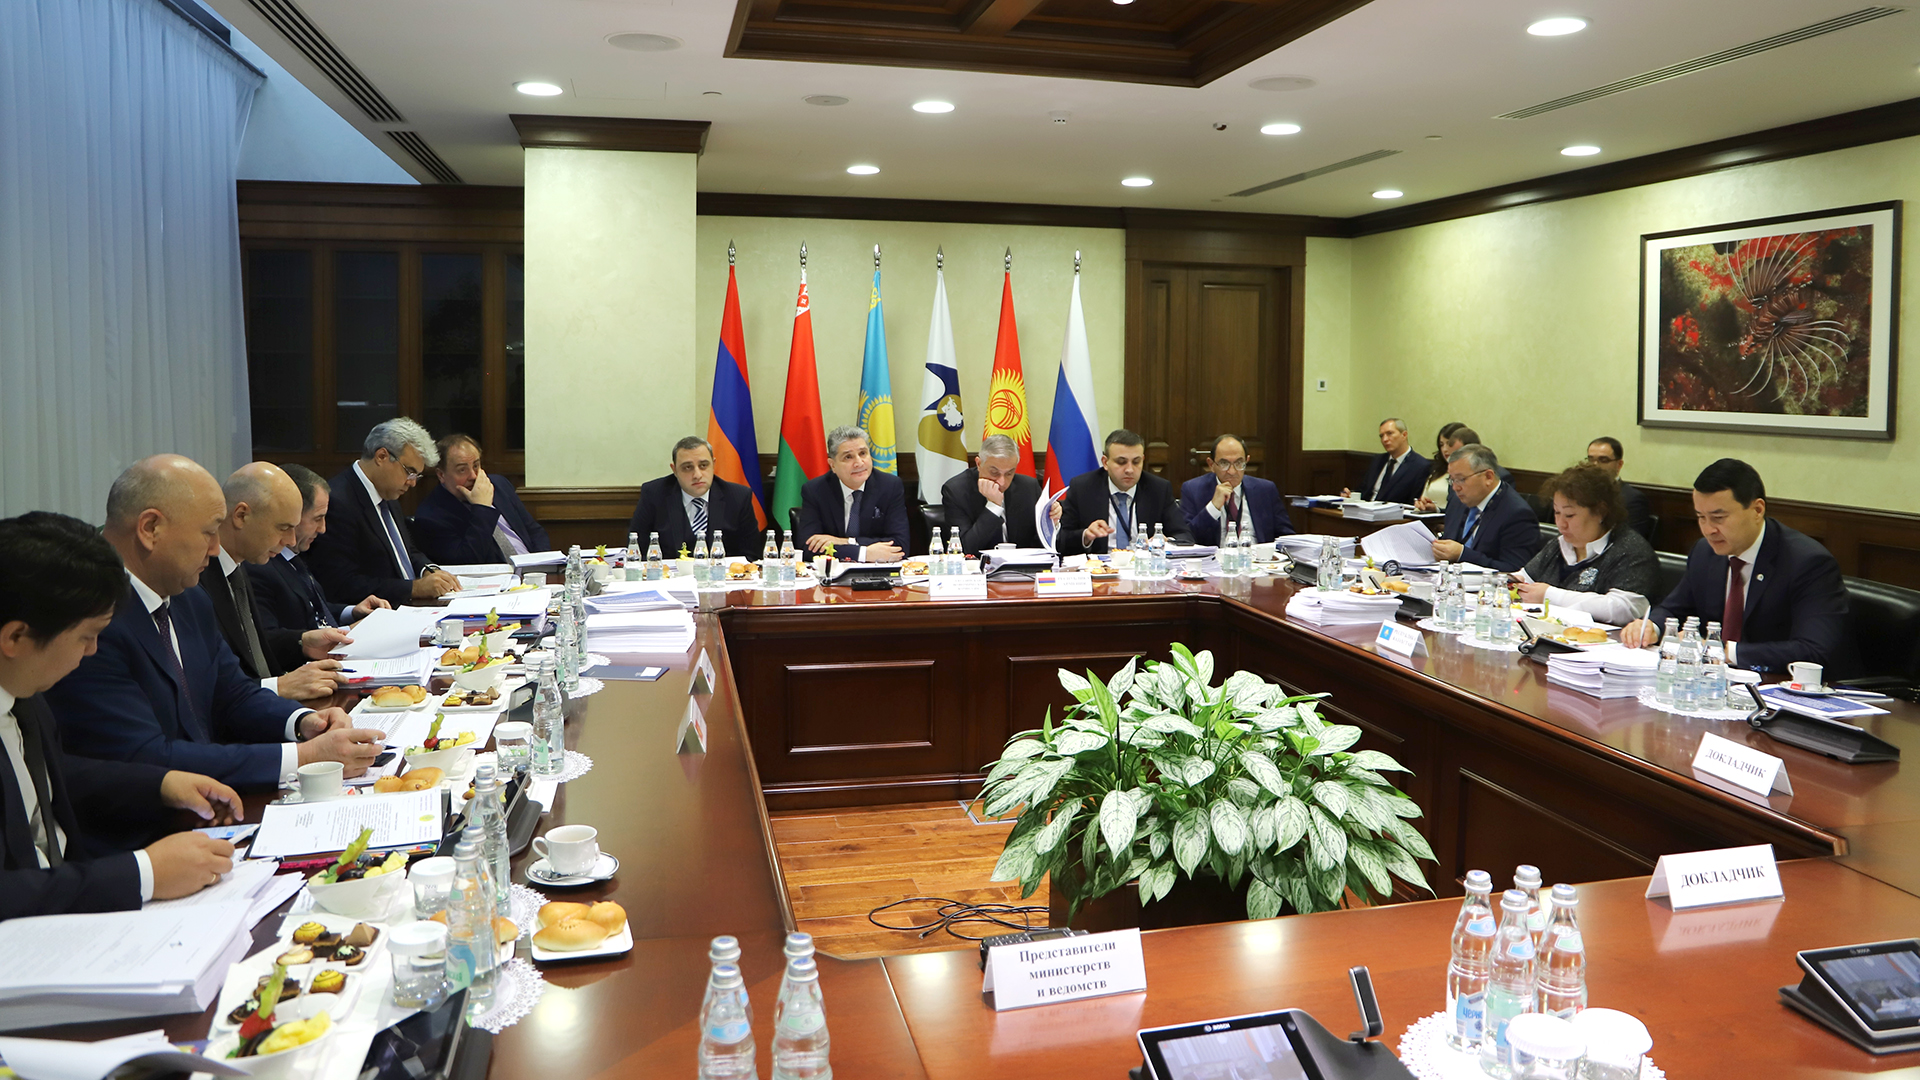 Әлихан Смайылов Еуразиялық экономикалық комиссия кеңесінің отырысына қатысты